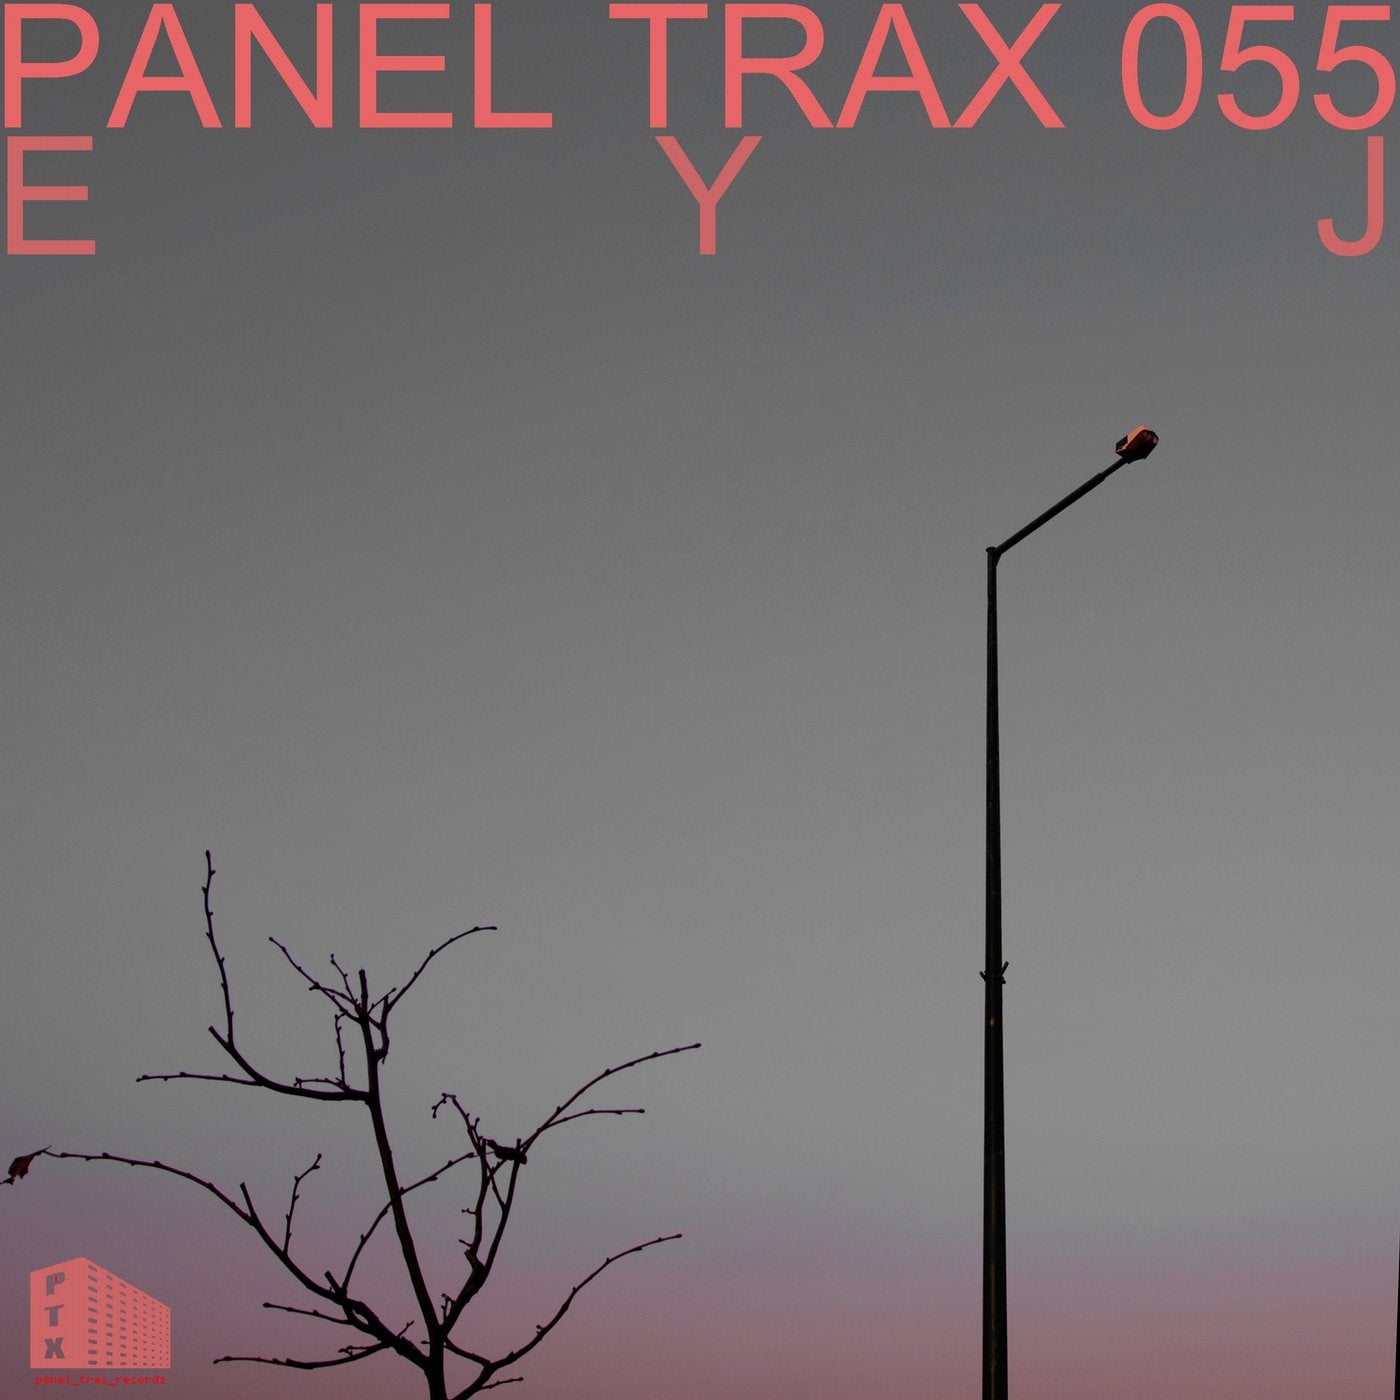 Panel Trax 055